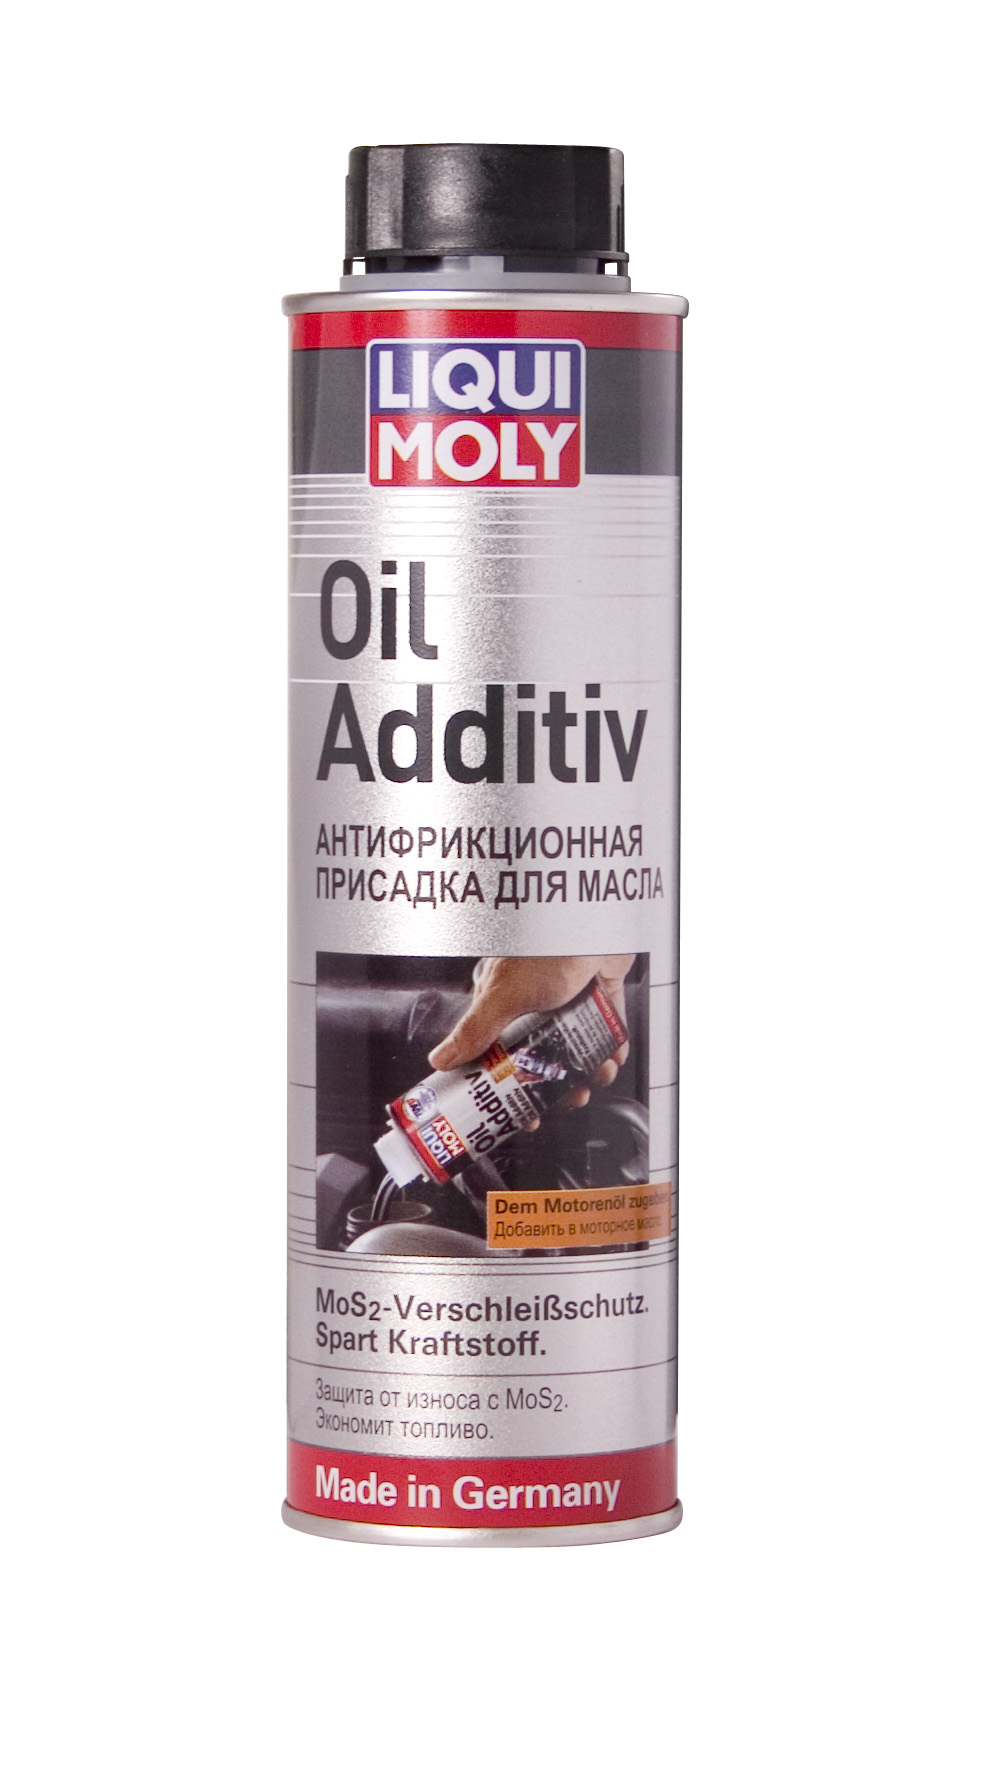 Купить запчасть LIQUI MOLY - 1998 Антифрикционная присадка с дисульфидом молибдена в моторное масло